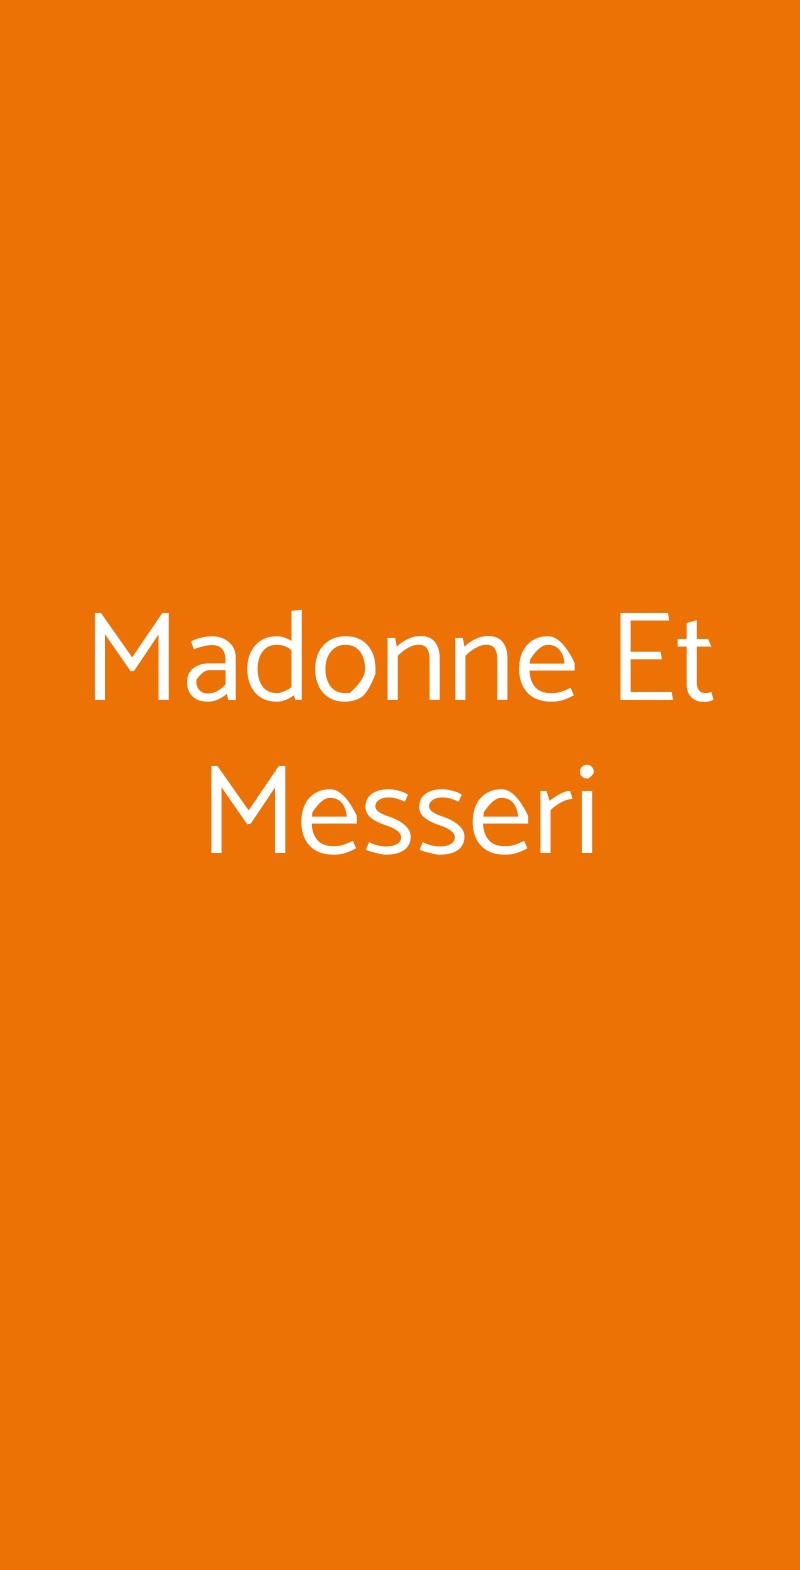 Madonne Et Messeri Gubbio menù 1 pagina